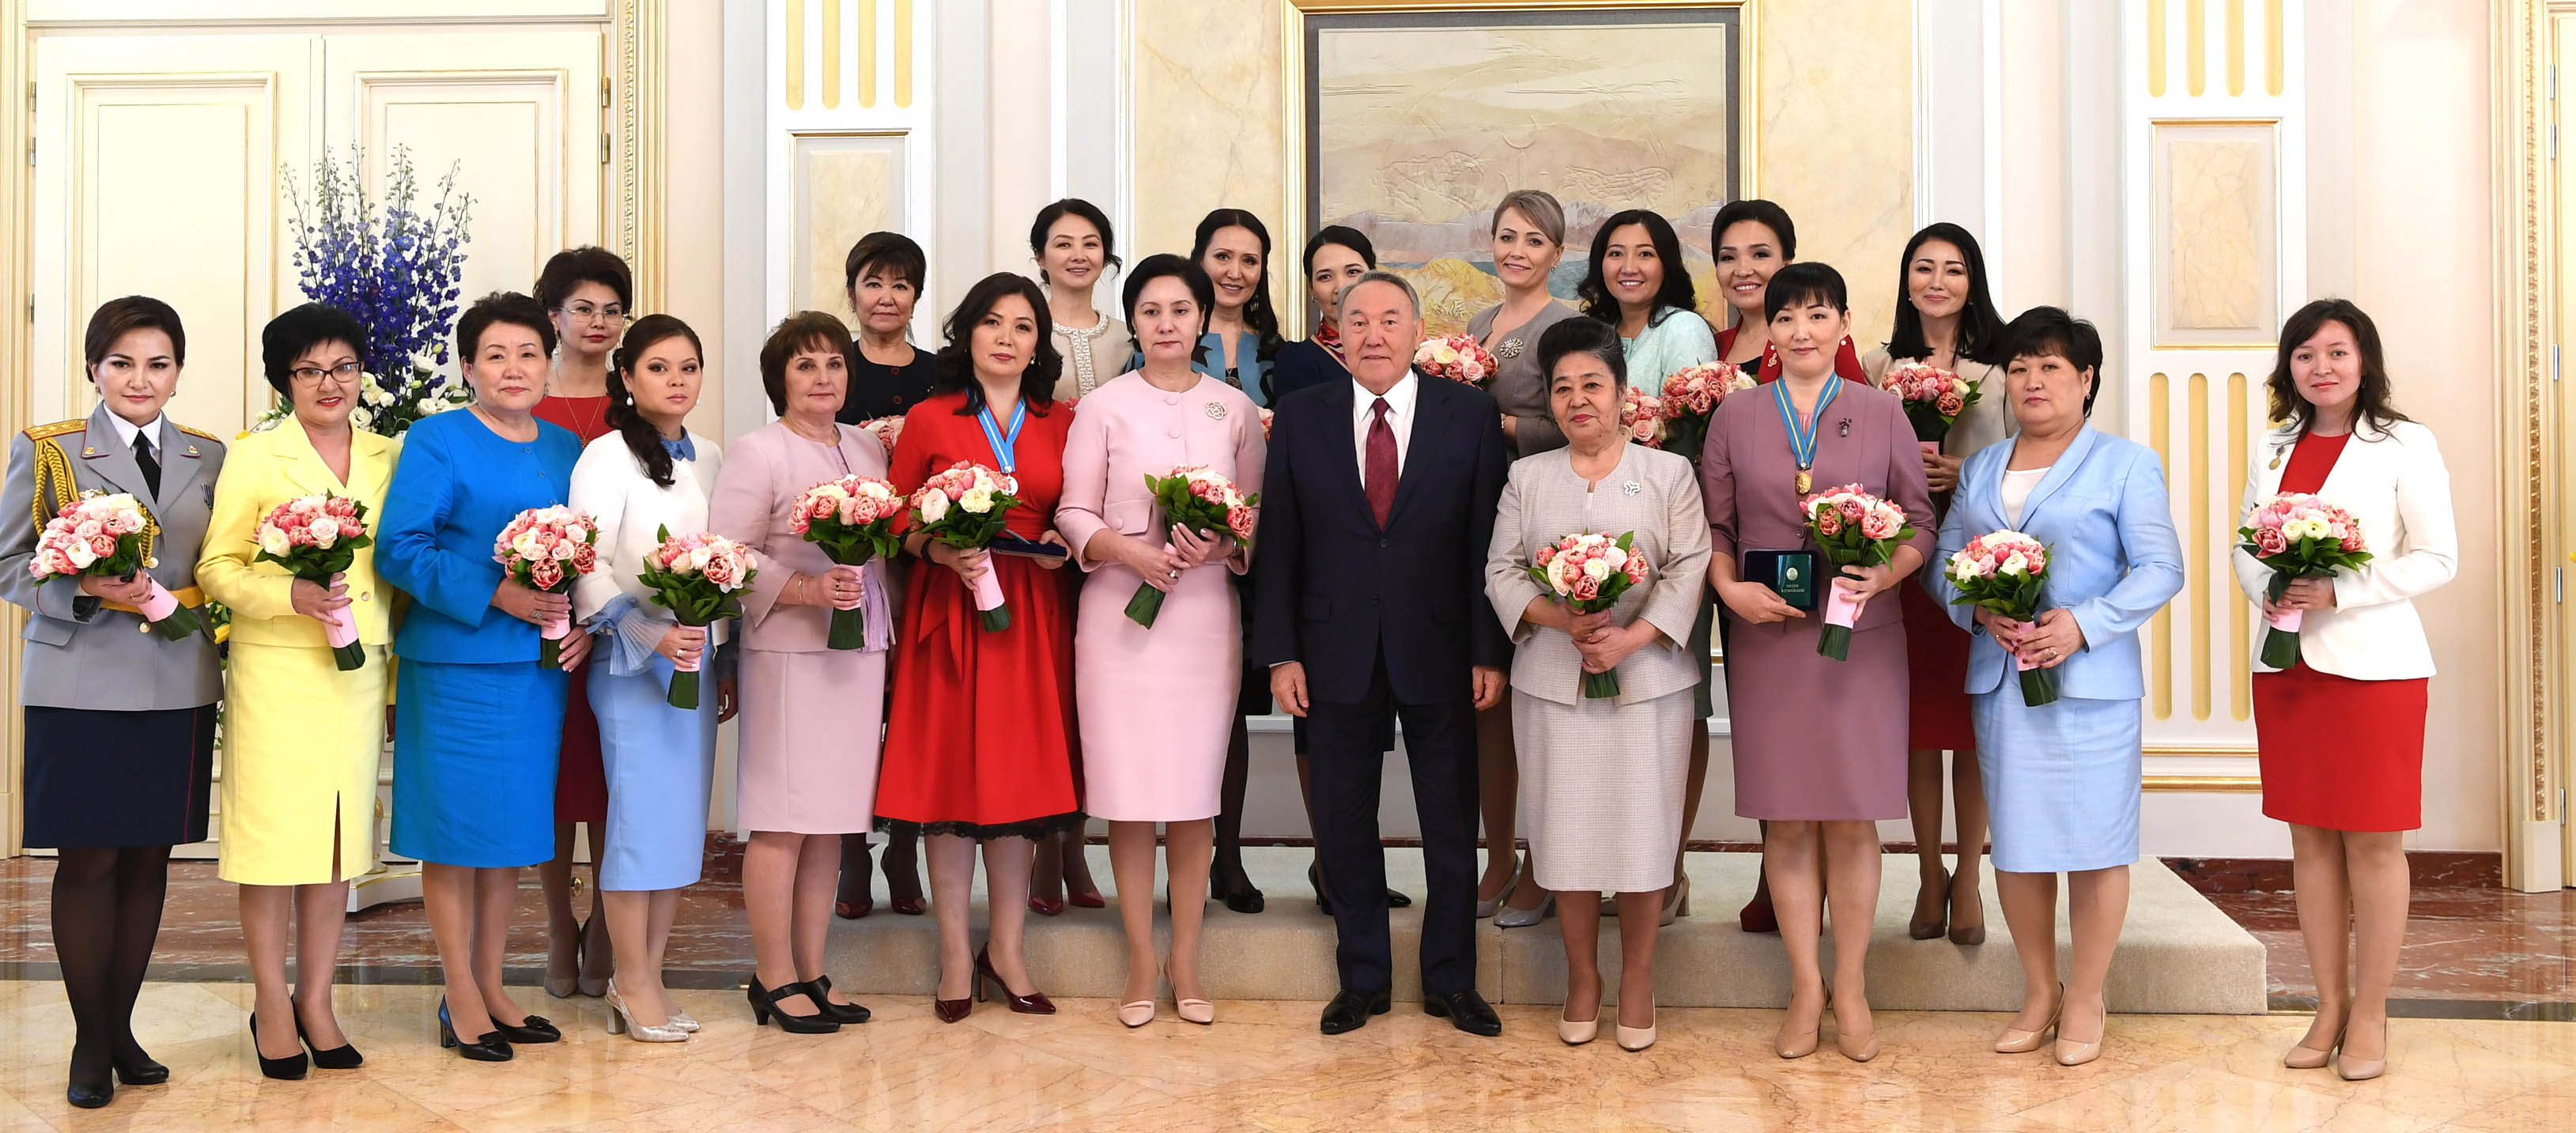 Назарбаев оказал особое внимание двум женщинам, участвовавшим в приеме в резиденции